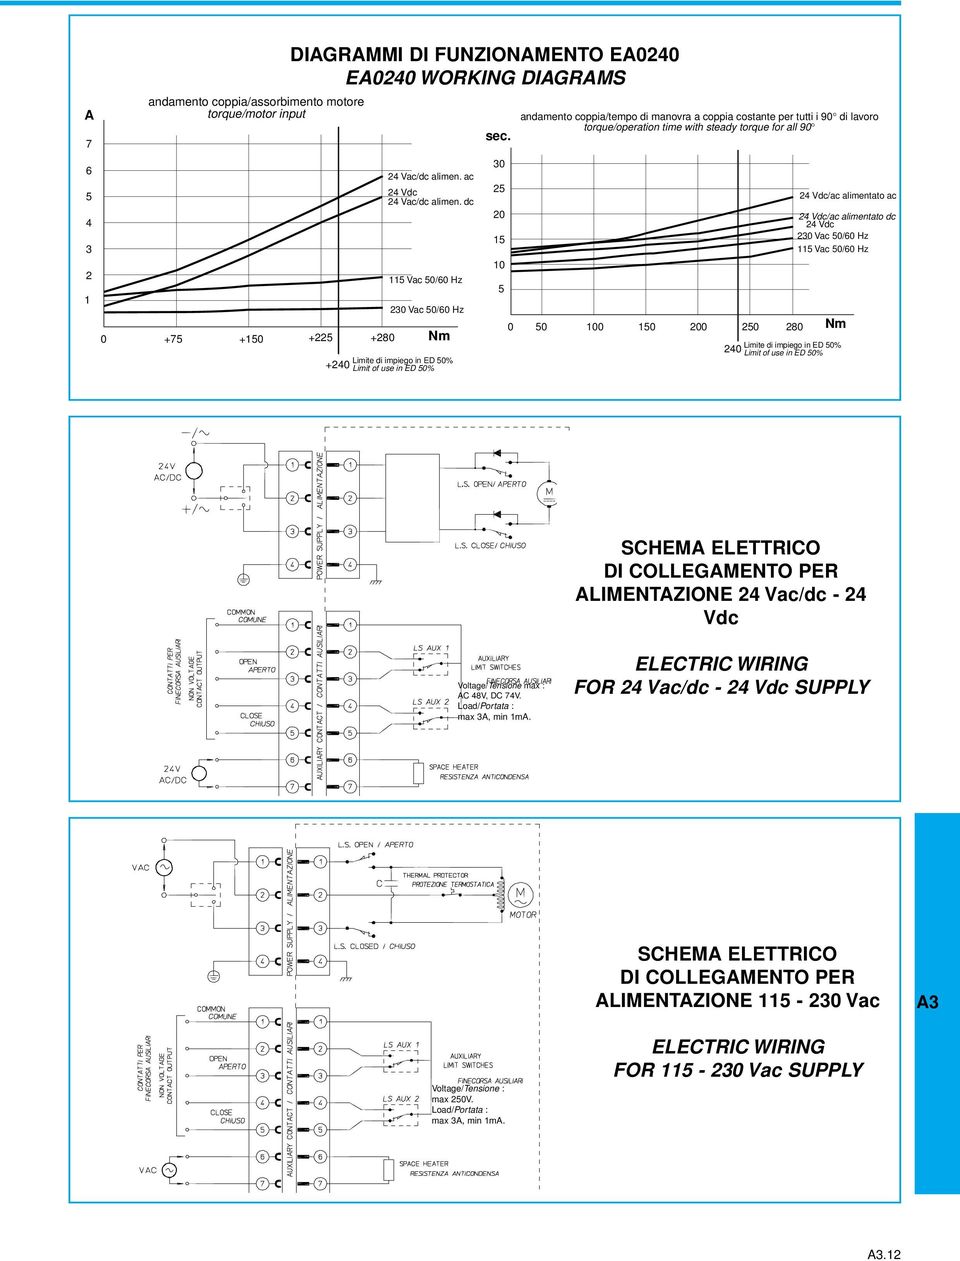 Voltage/Tensione max : C 48V, DC 74V. Load/Portata : max, min m.